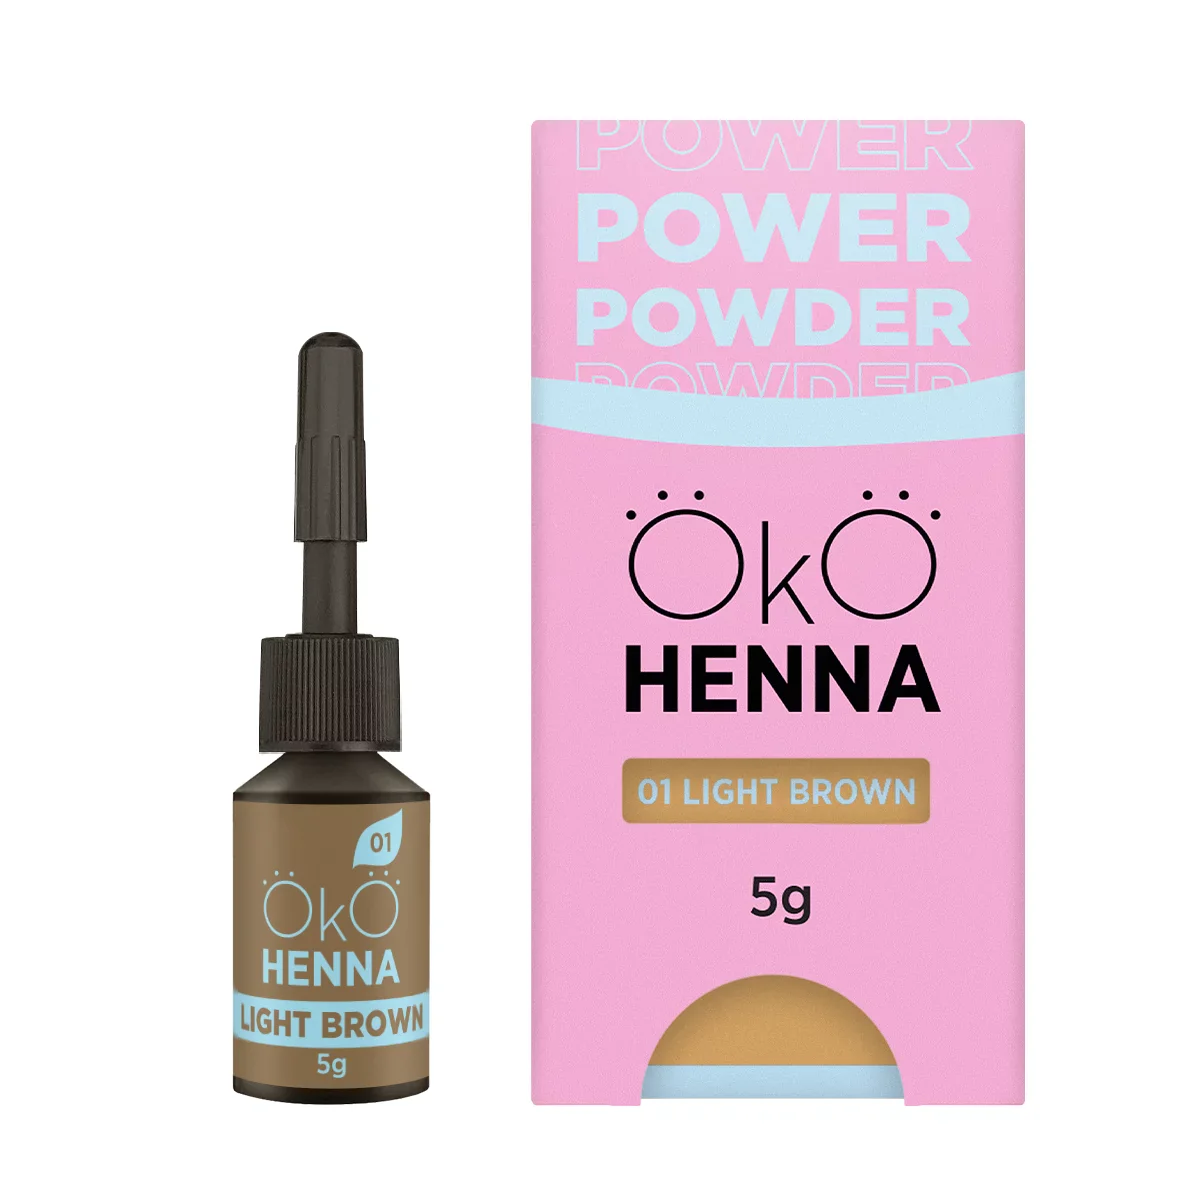 OKO - Power Powder Henna Set